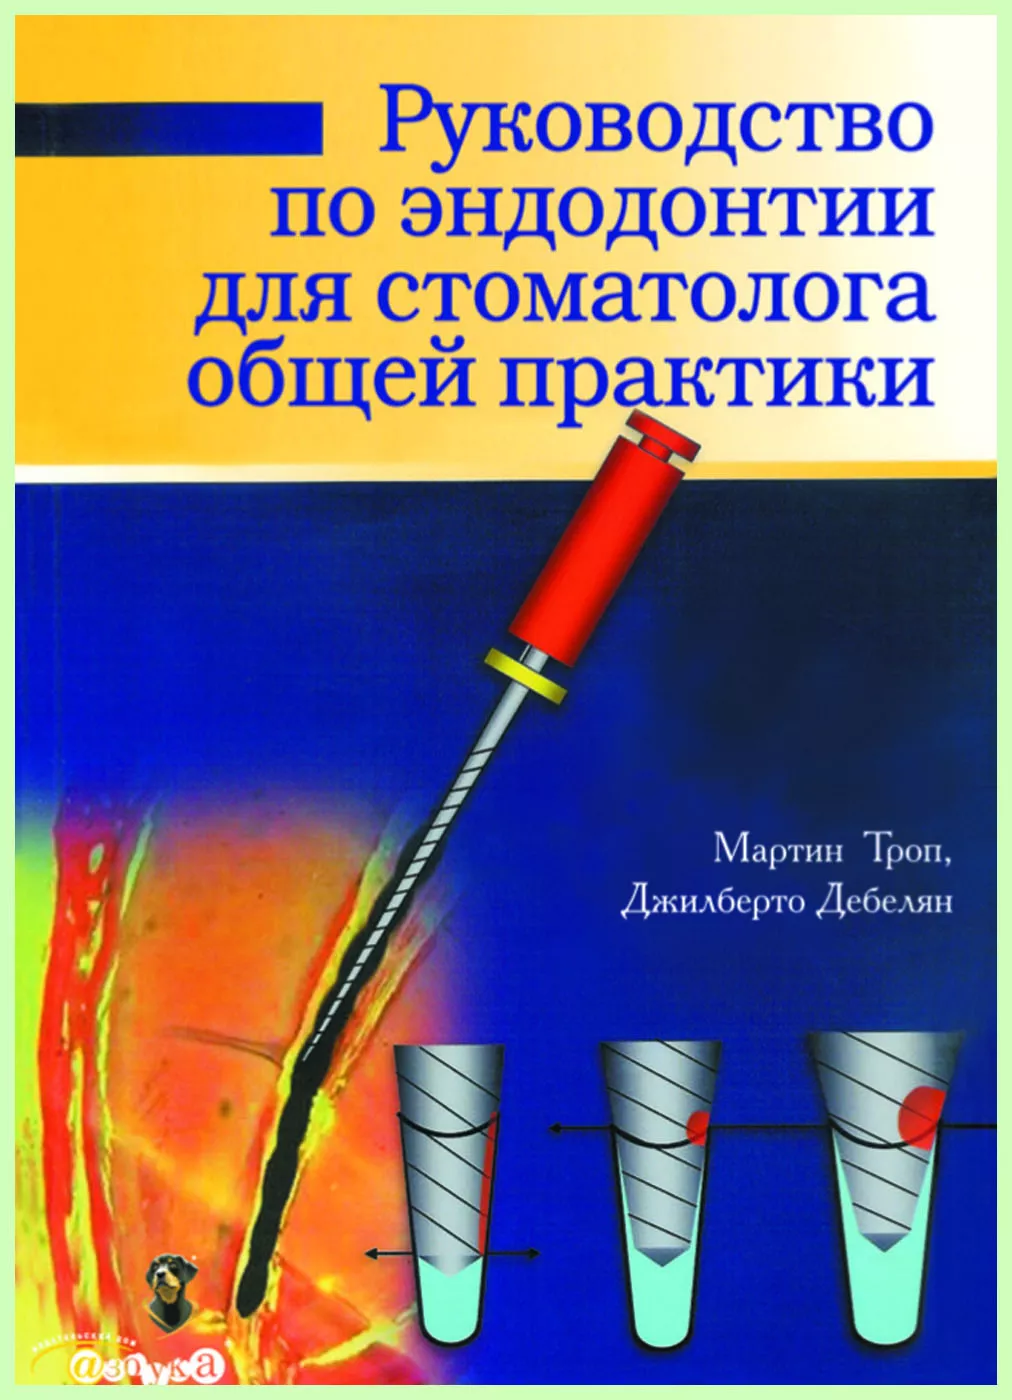 Книга "Руководство по эндодонтии для стоматолога общей практики" / М. Троуп